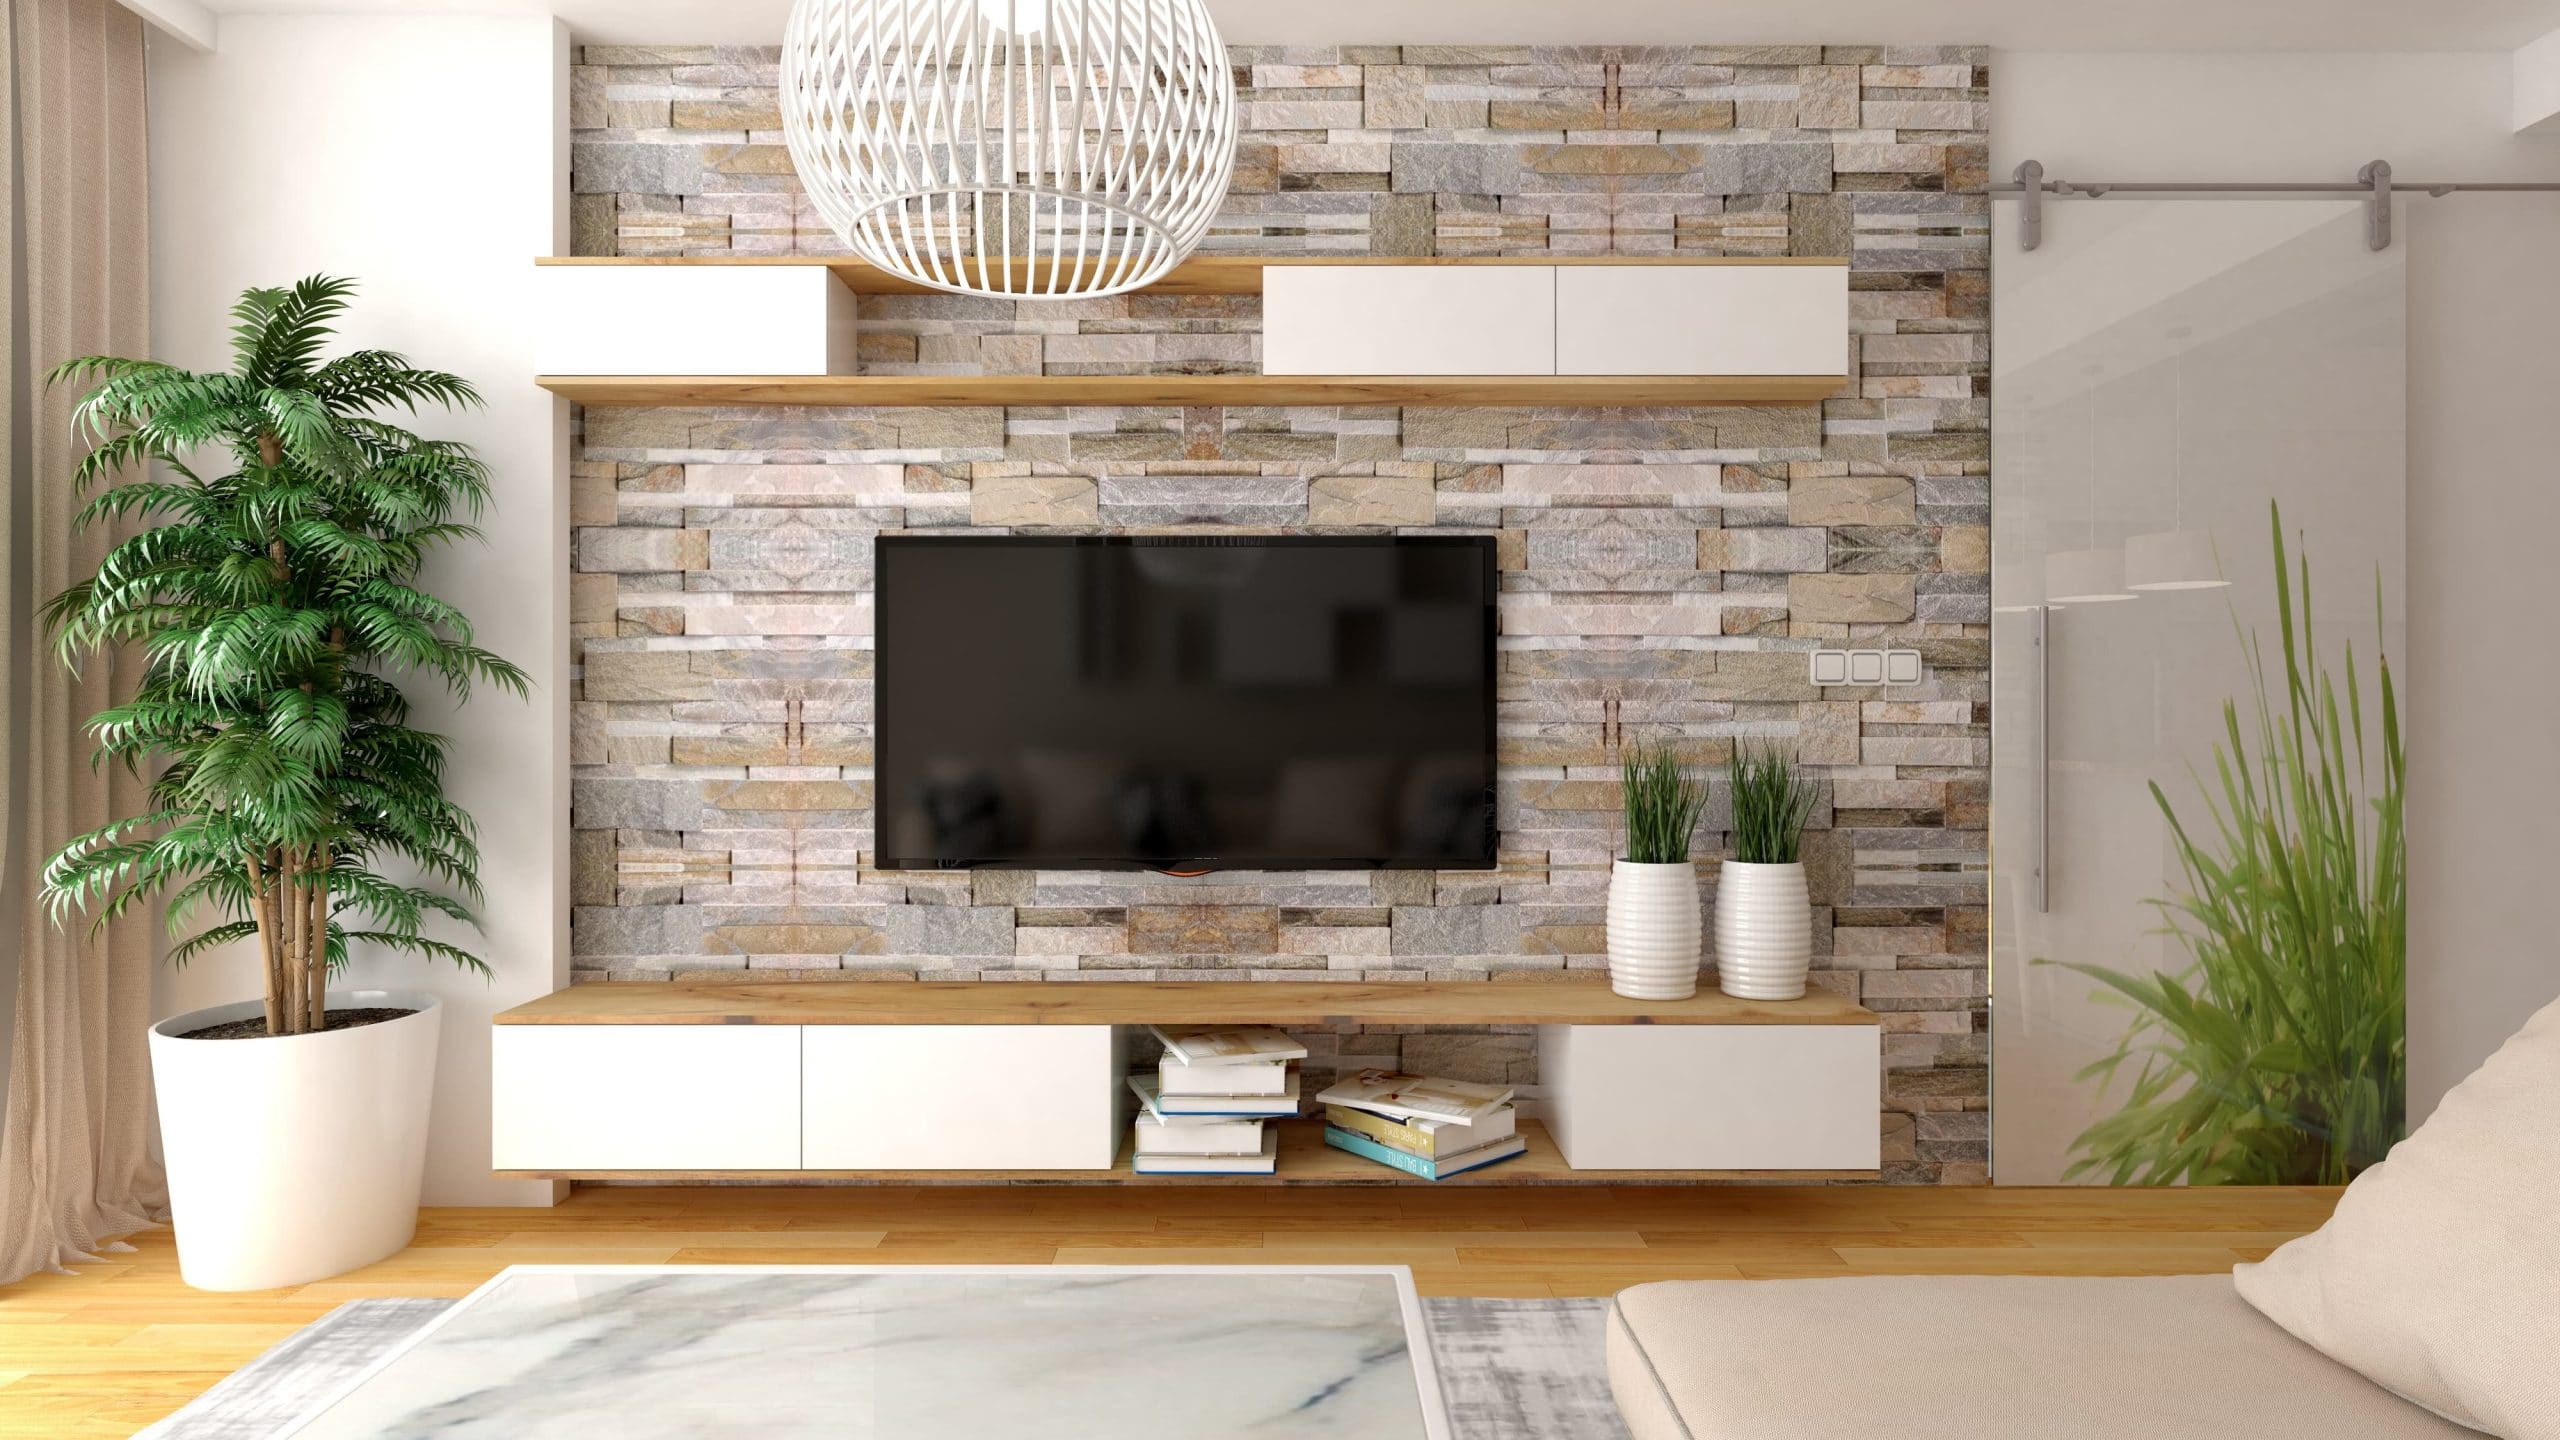 Cómo decorar la pared de la televisión? ⋆ ¡Ideas!